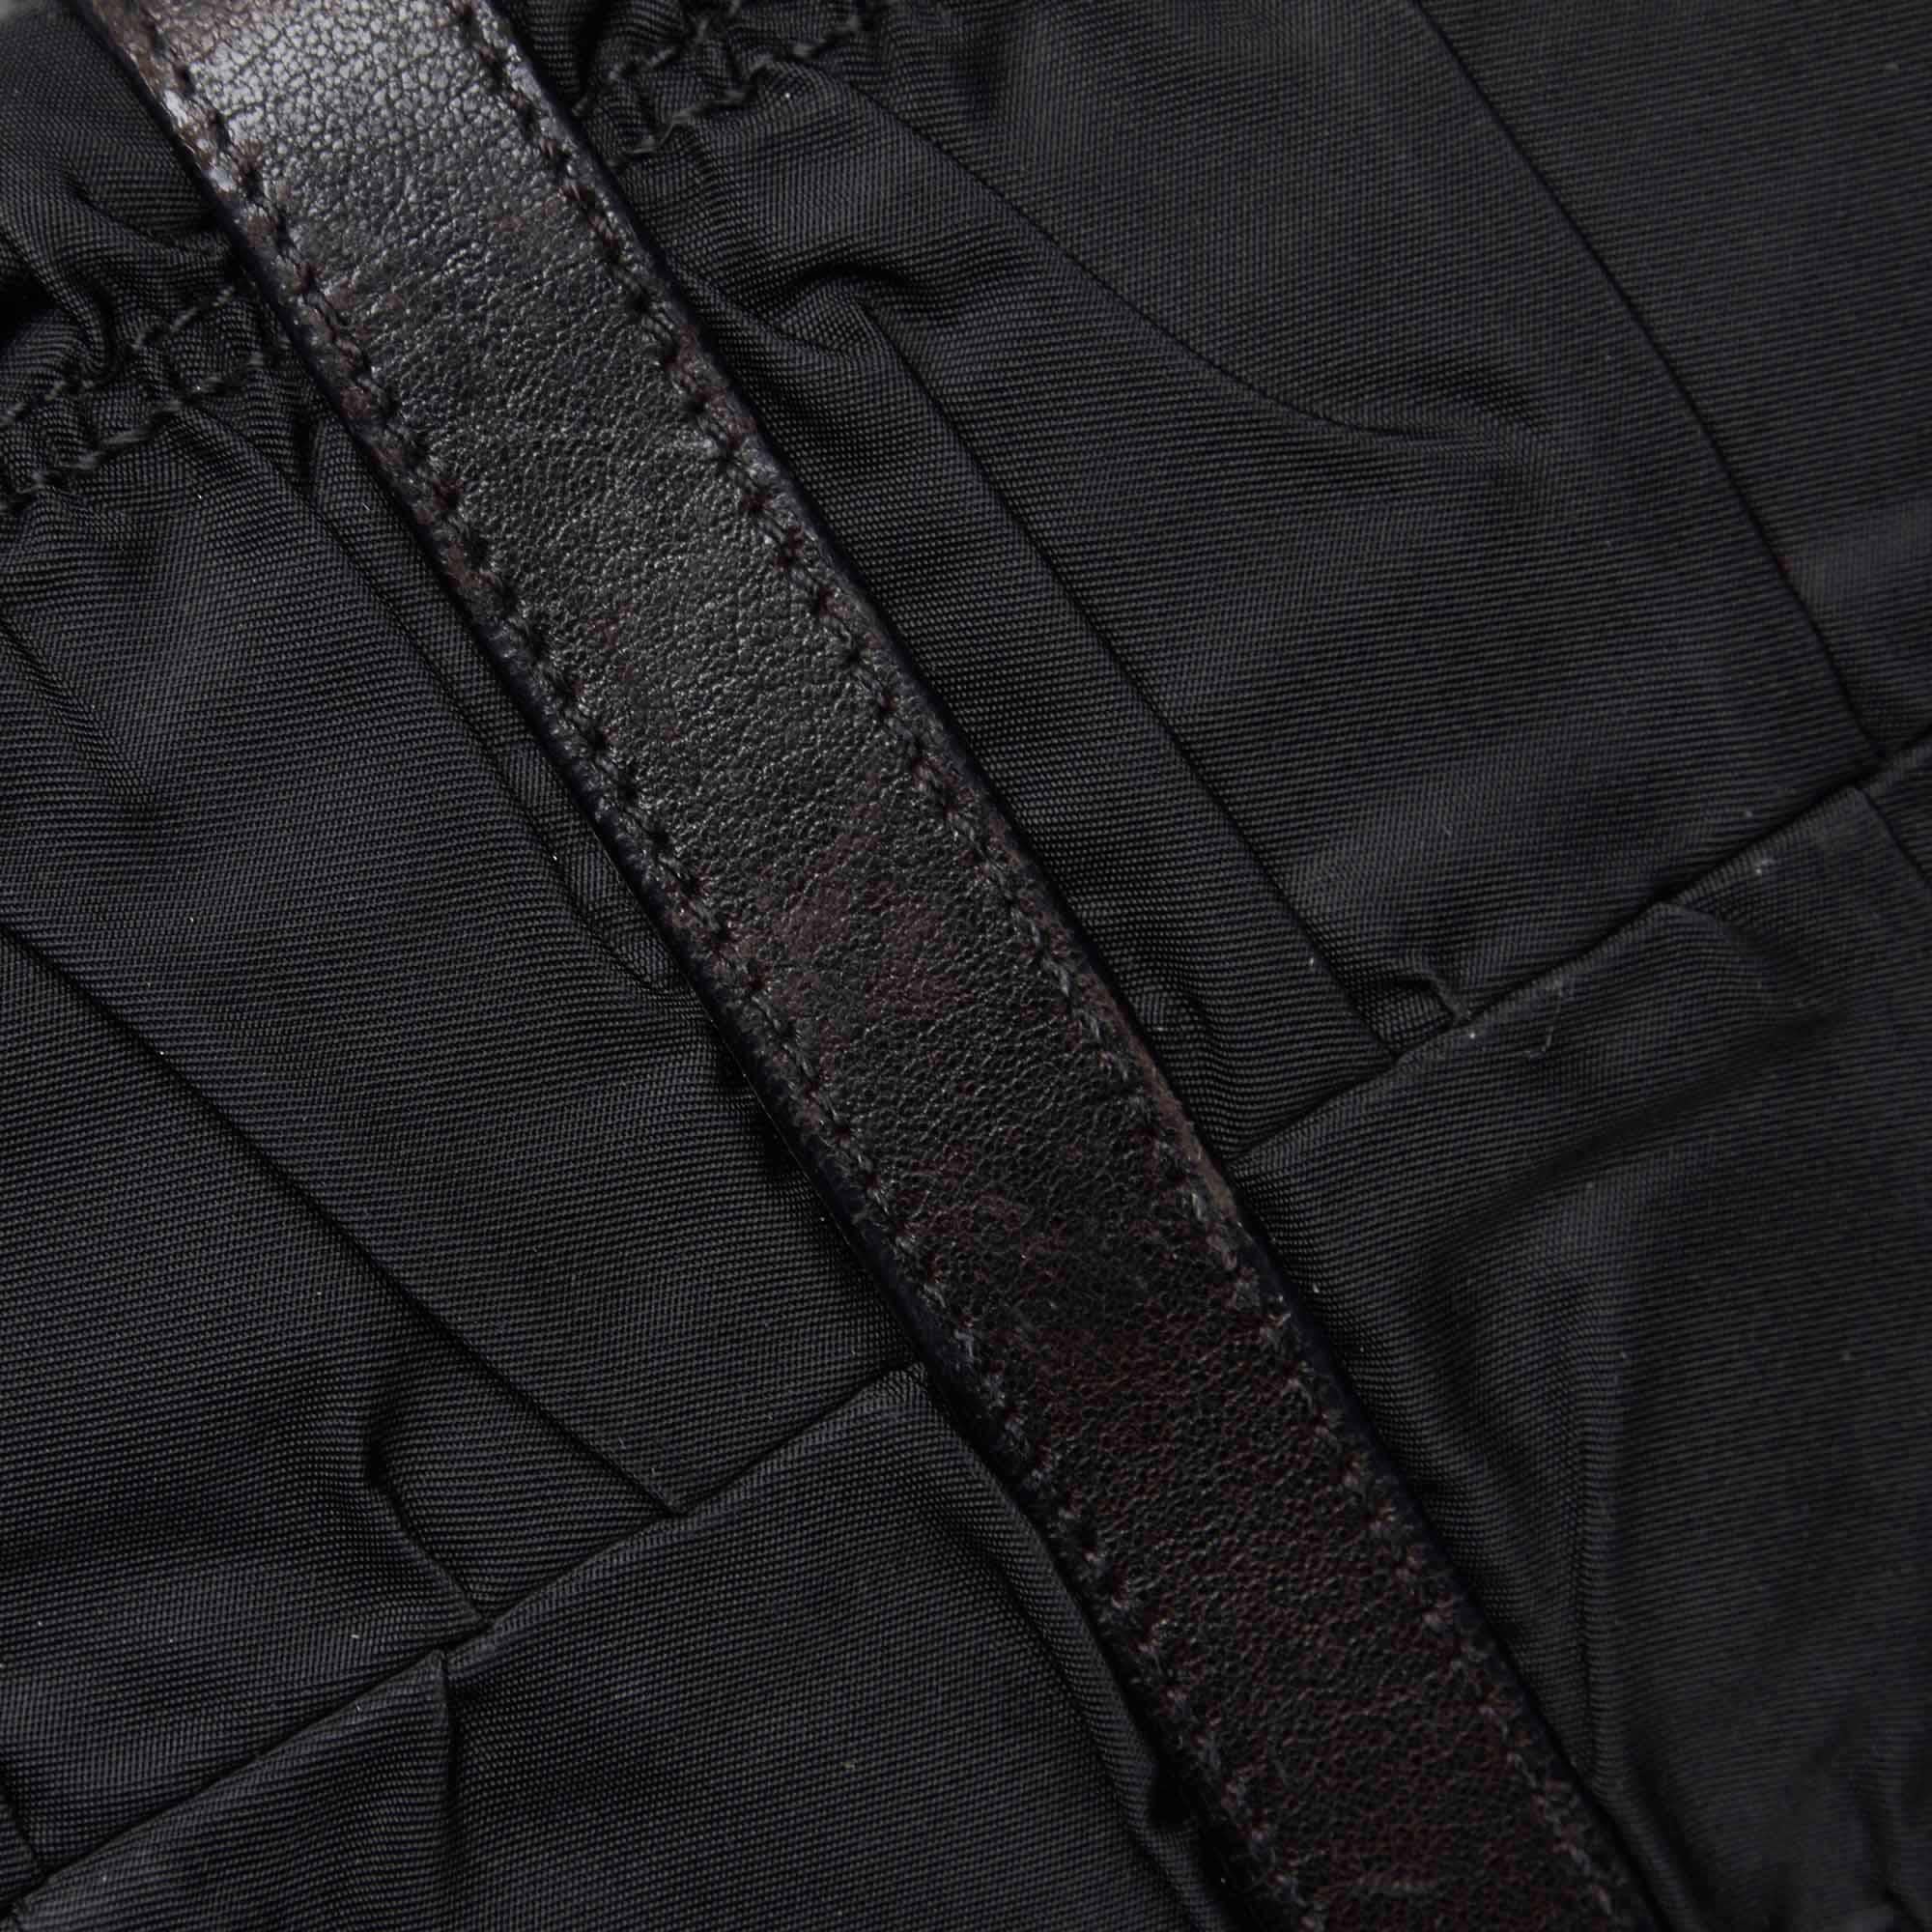 Vintage Authentic Prada Black Nylon Fabric Gathered Handbag ITALY LARGE  3